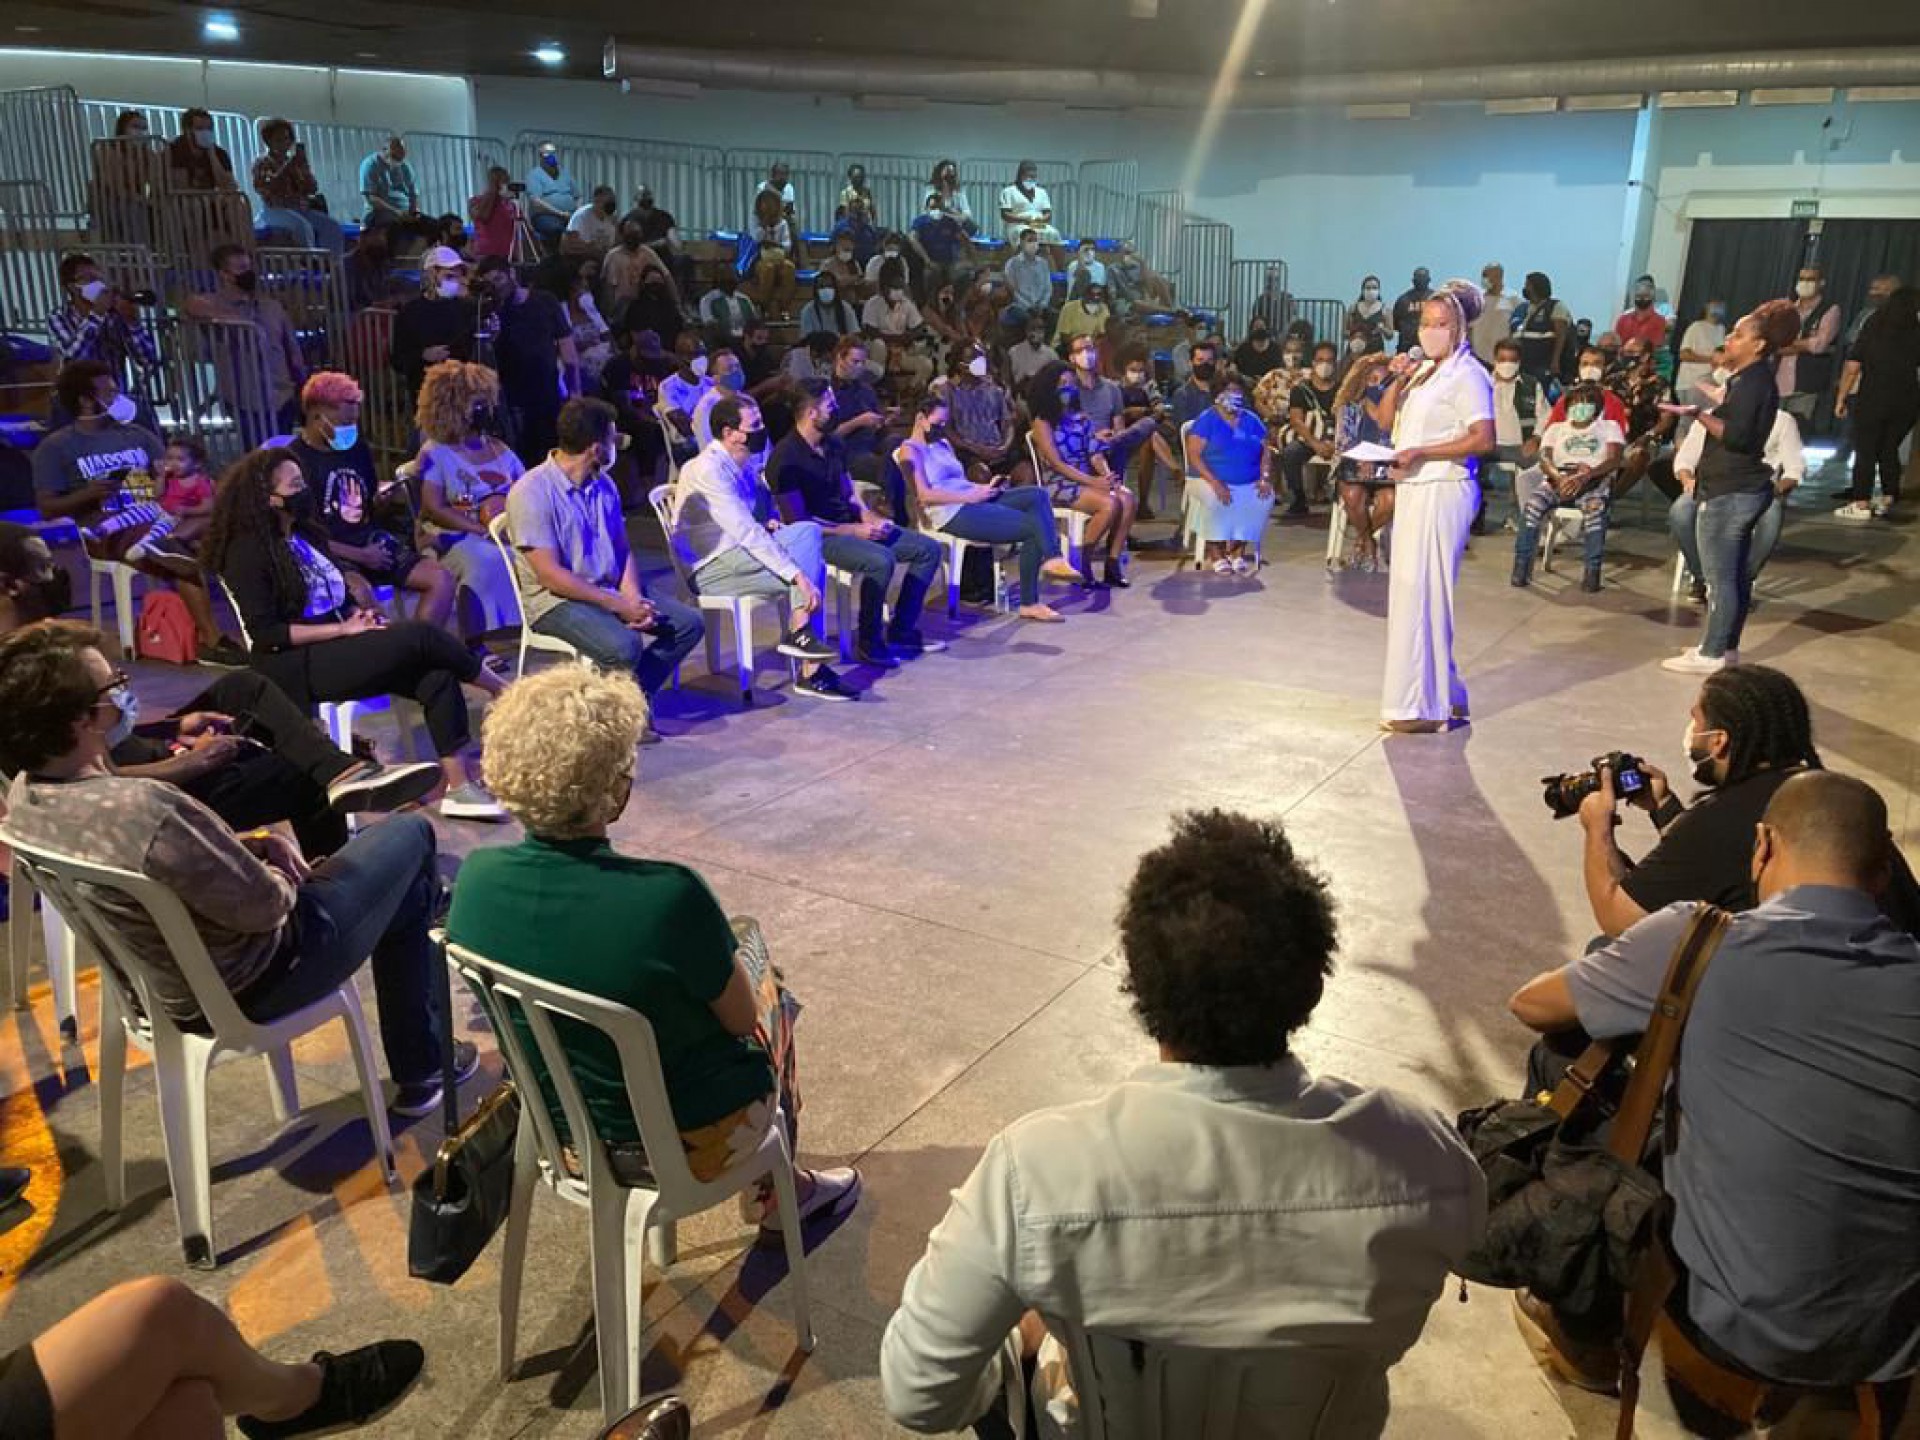 Prefeitura do Rio lança programa cultural em Madureira com investimento inicial de R$ 1,5 milhão